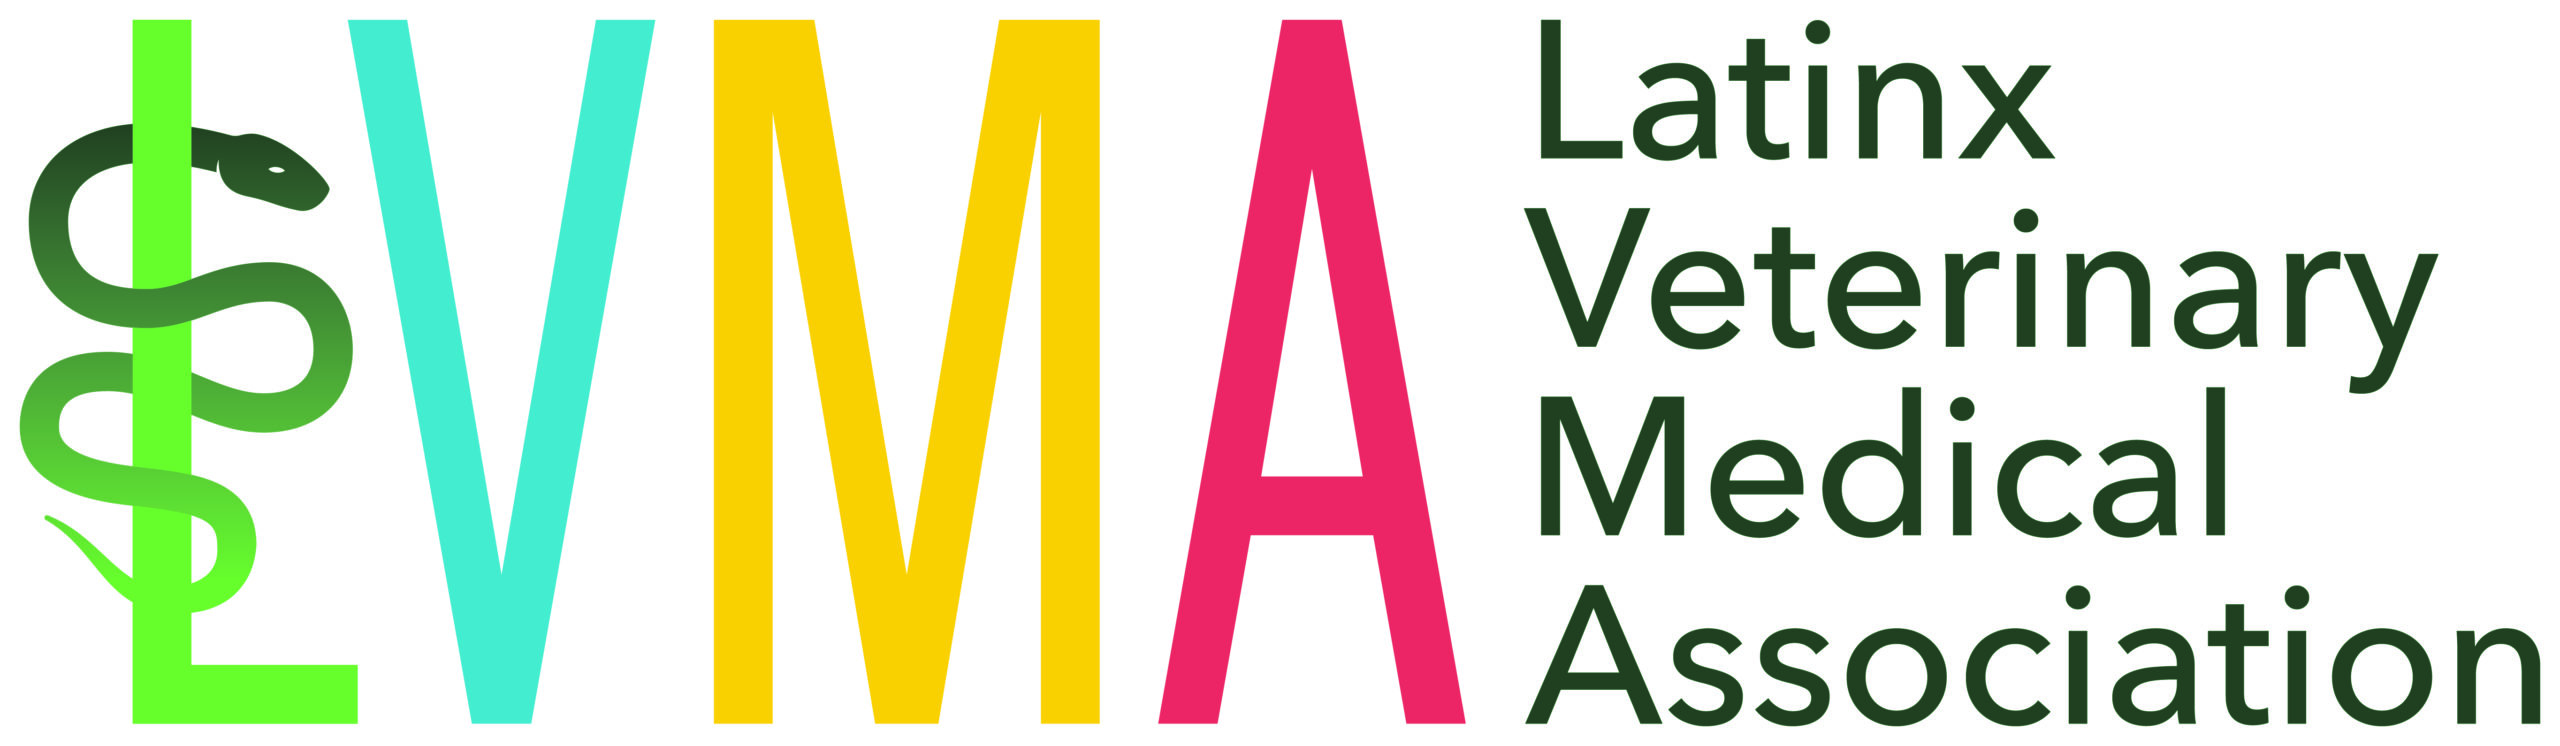 Latinx Veterinary Medical Association (LVMA) logo 